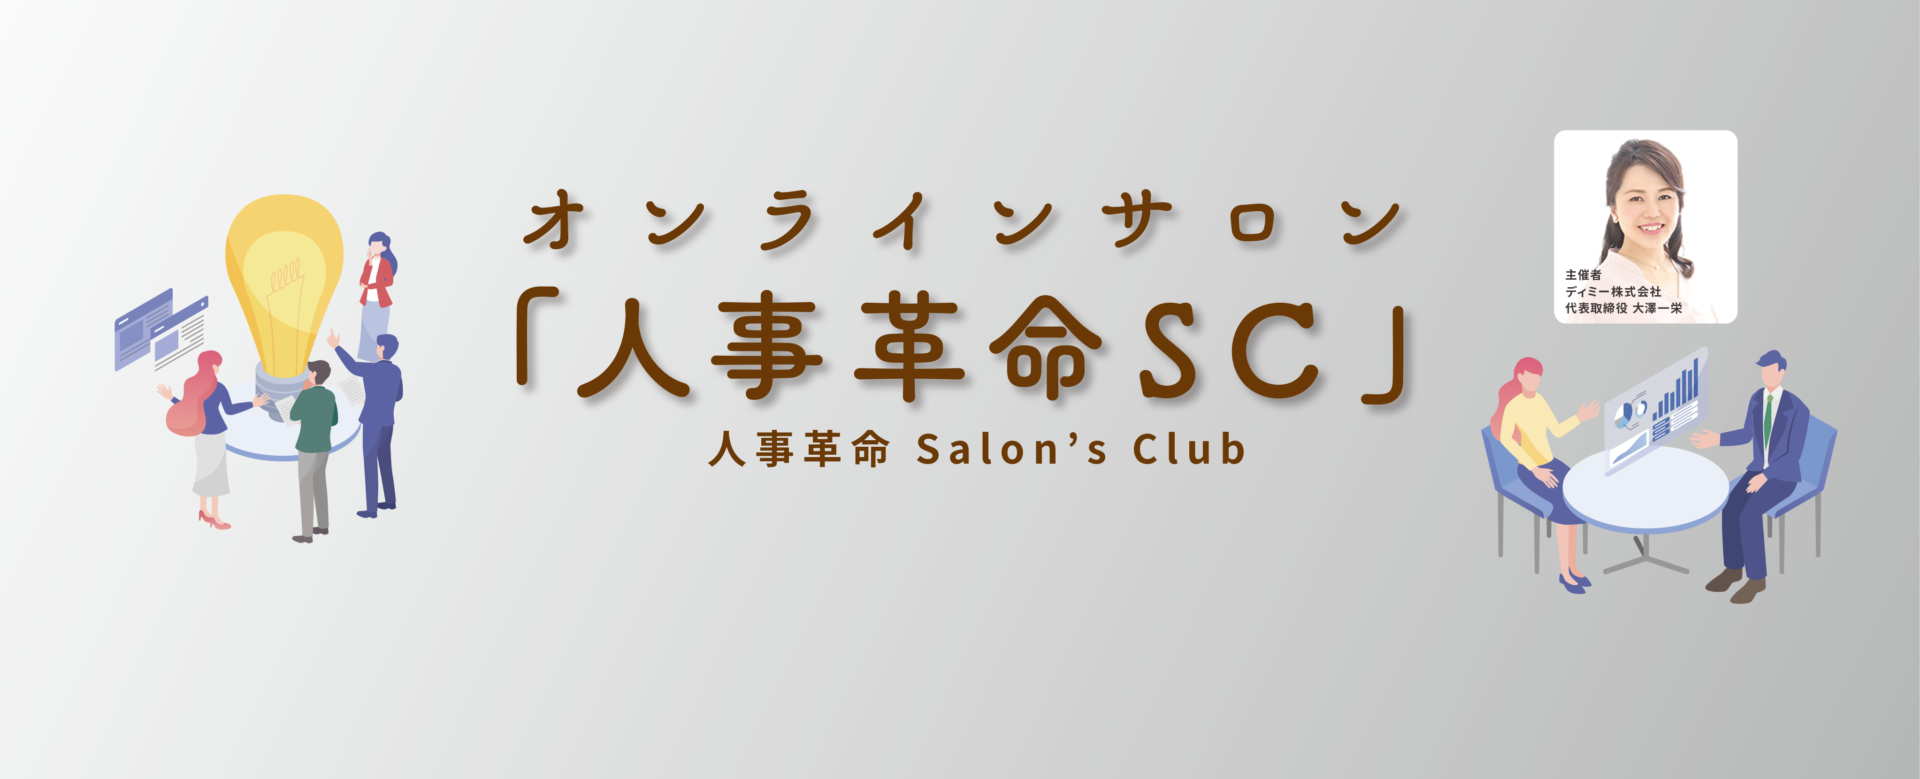 人手不足克服オンラインサロン 人事改革SC 人事革命Salon's Club